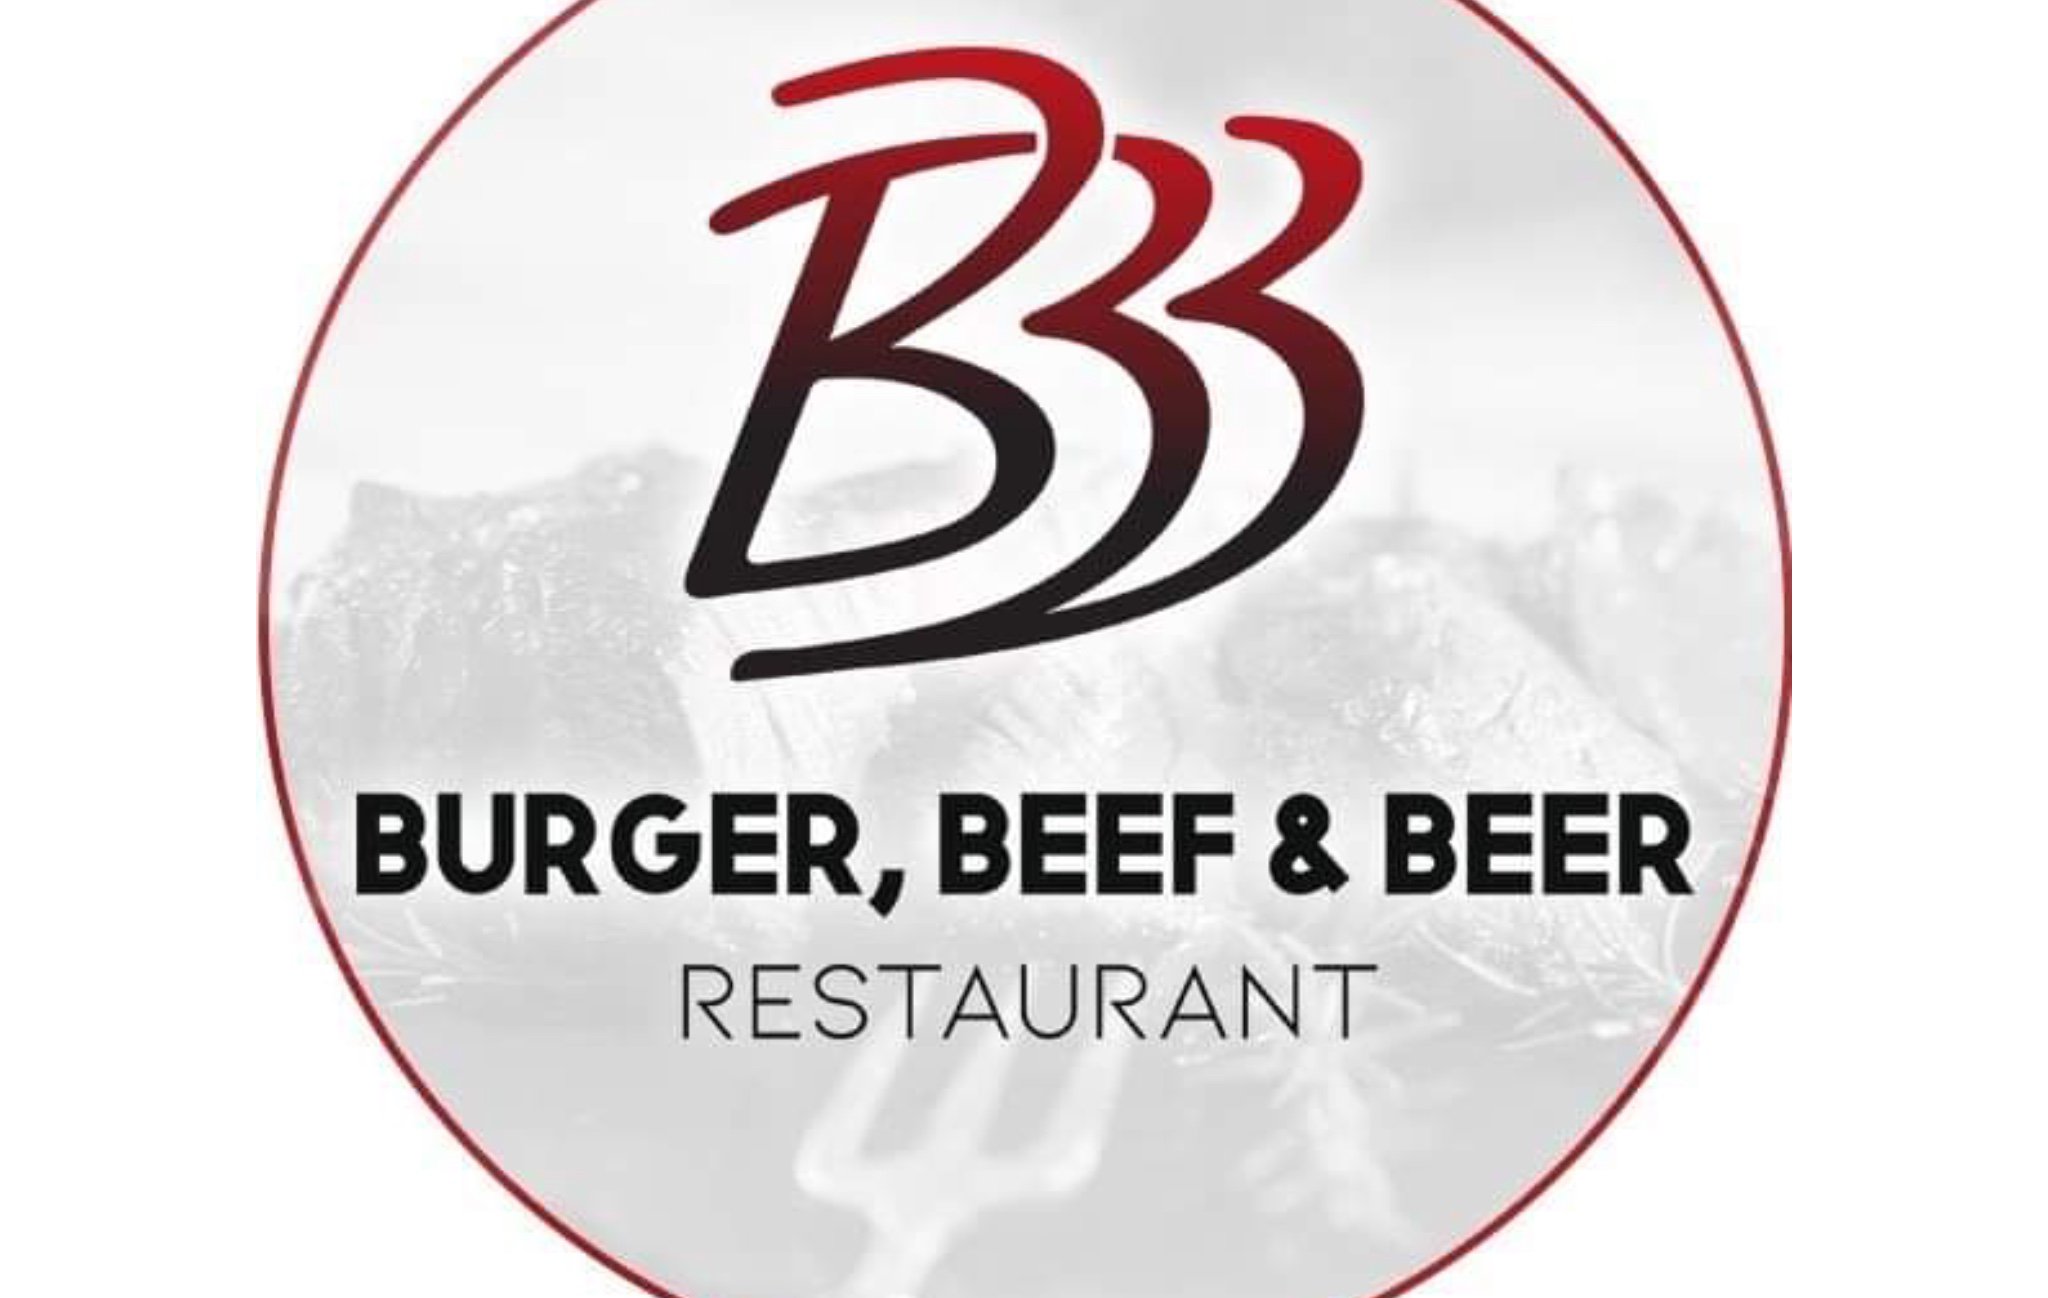 BURGERS BEEF & BEER